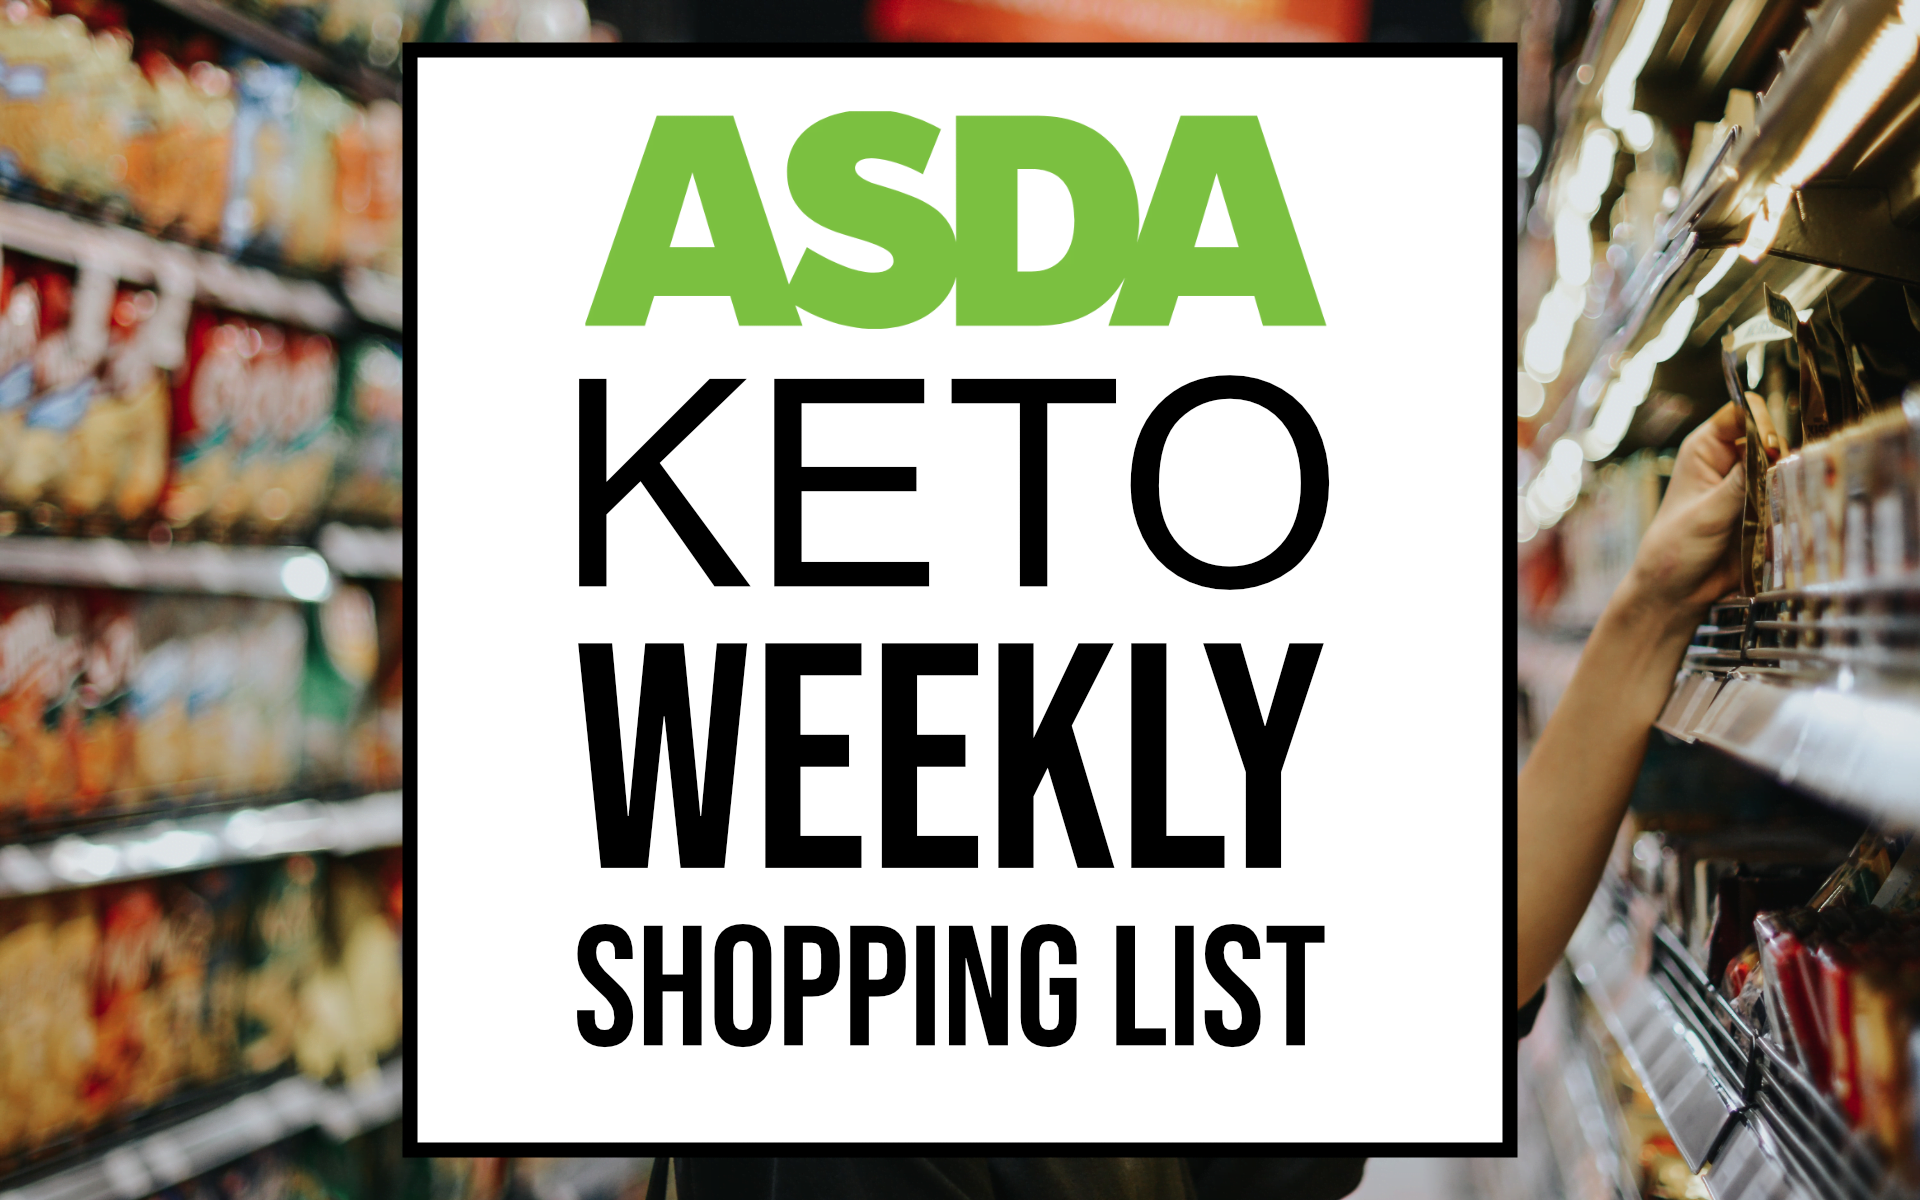 Asda Keto Weekly Shopping List